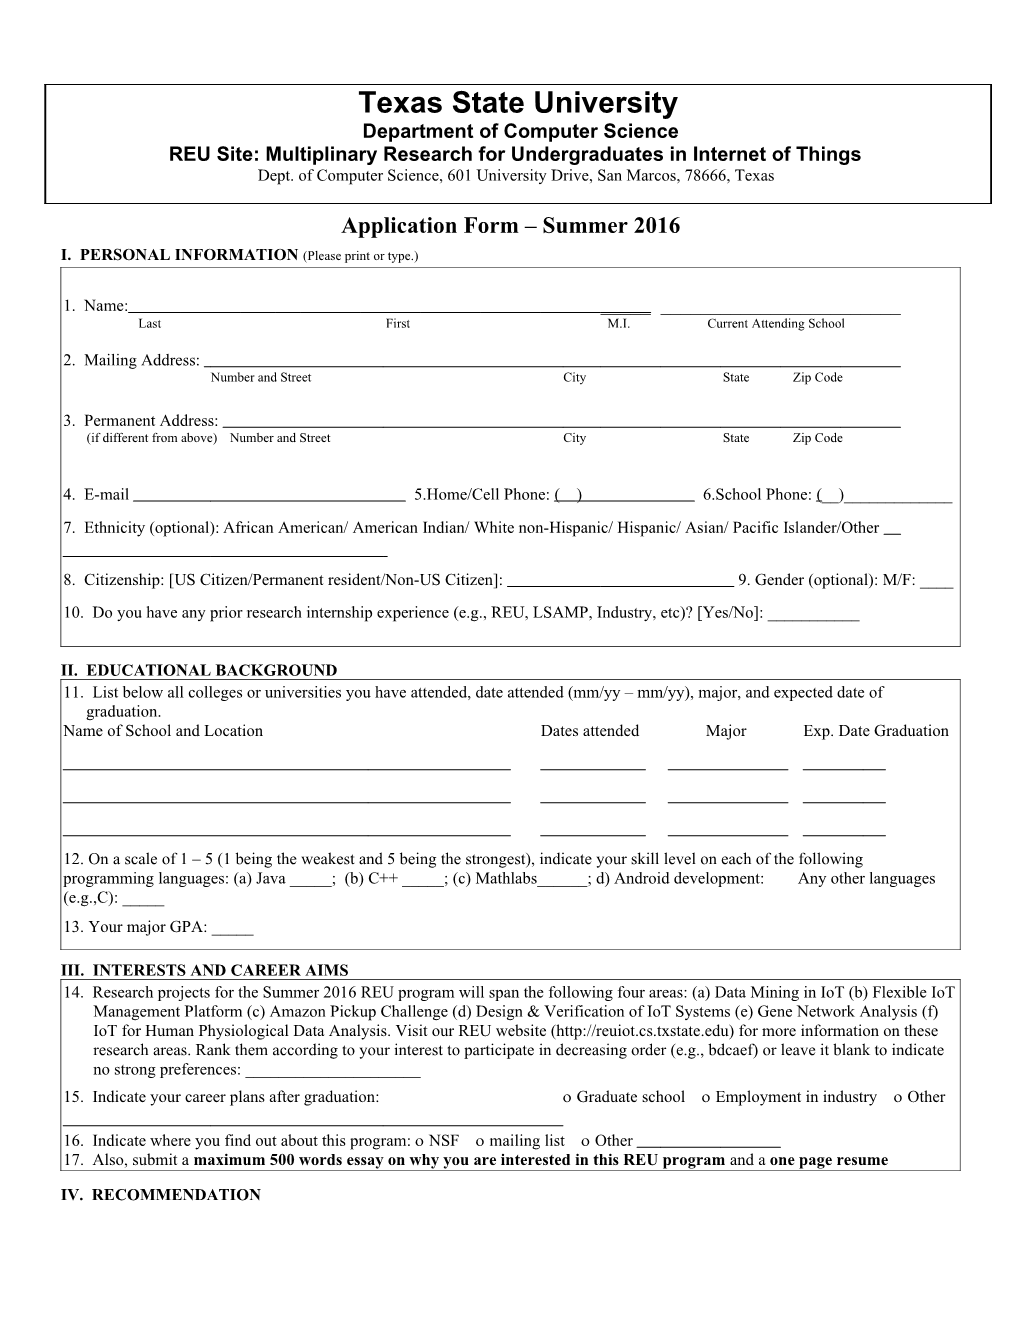 Application Form Summer 2016